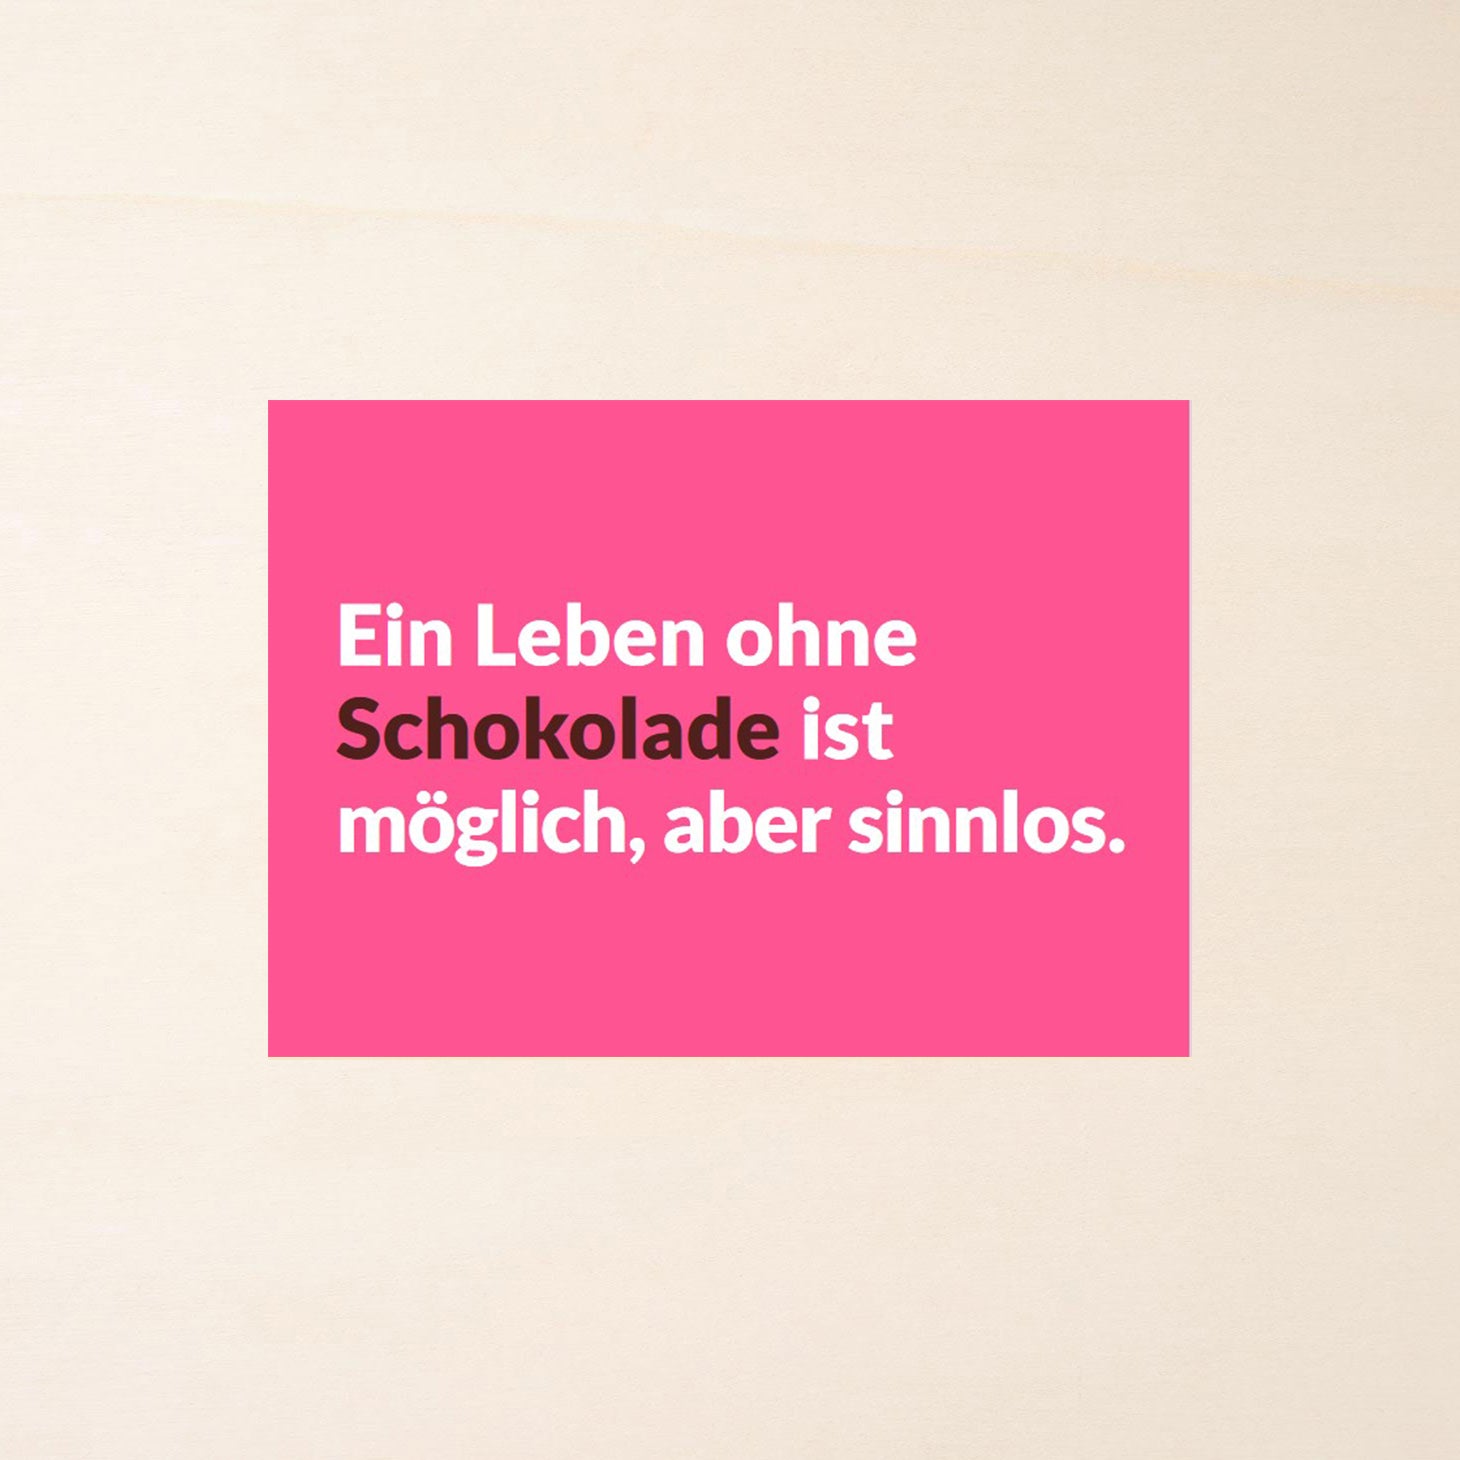 Postkarte mit Schoko-Spruch "Ein Leben ohne Schokolade ist möglich, aber sinnlos.